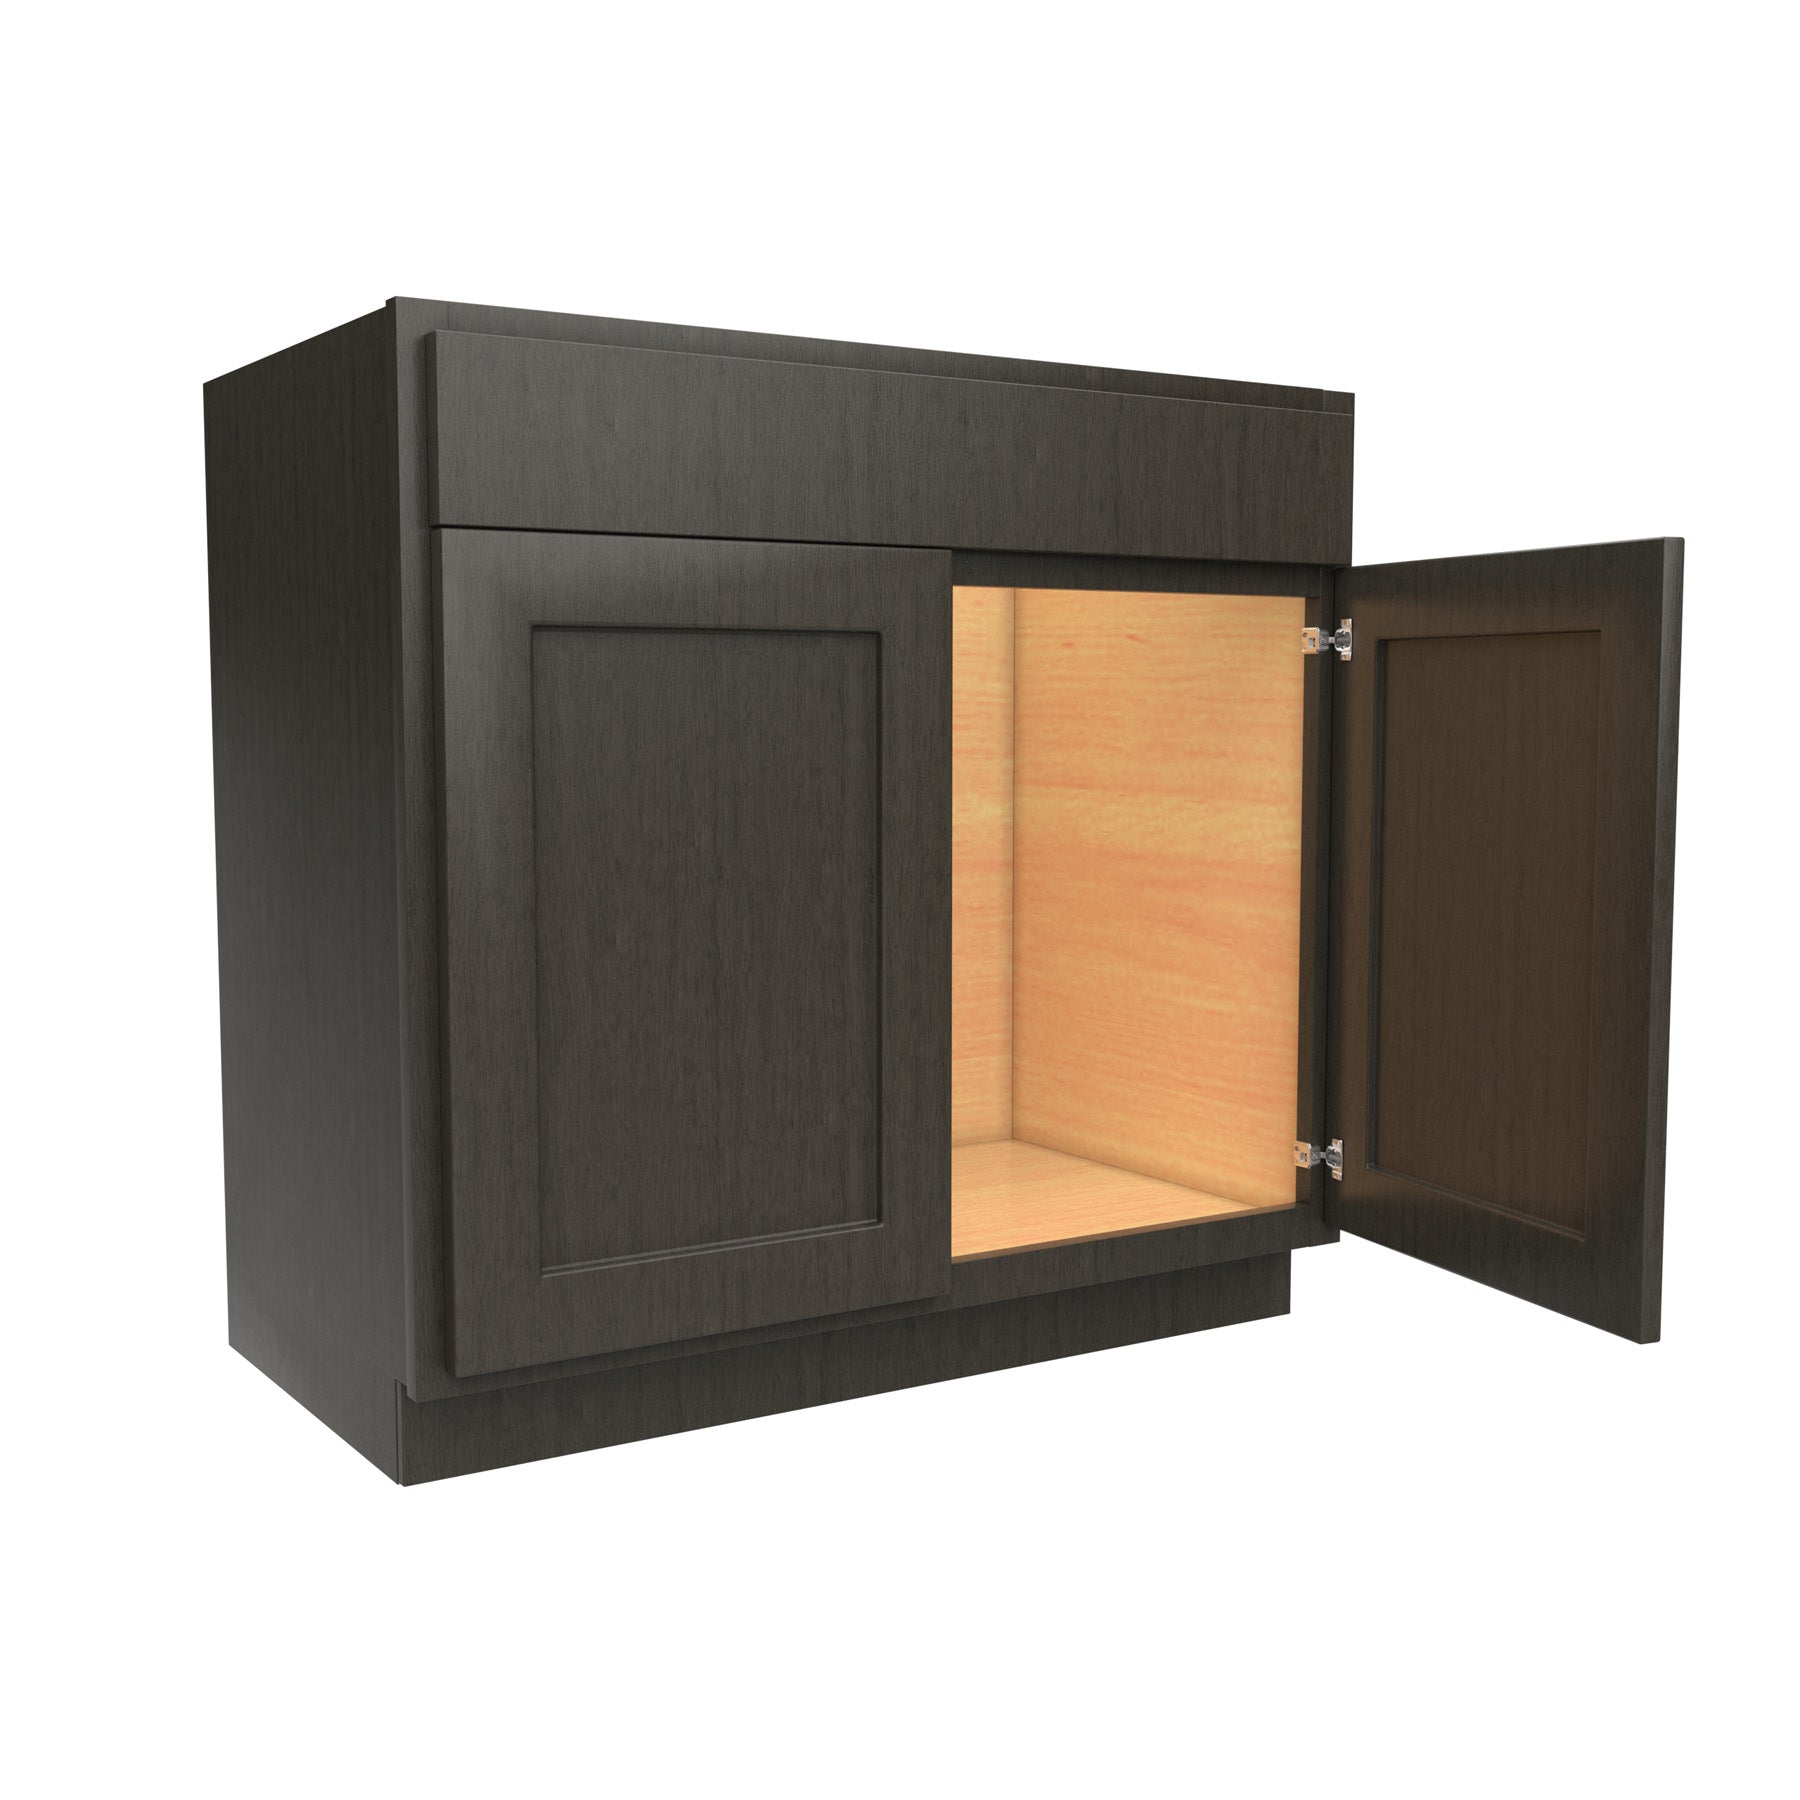 Luxor Smoky Grey - Double Door Vanity Sink Base Cabinet | 36"W x 34.5"H x 21"D